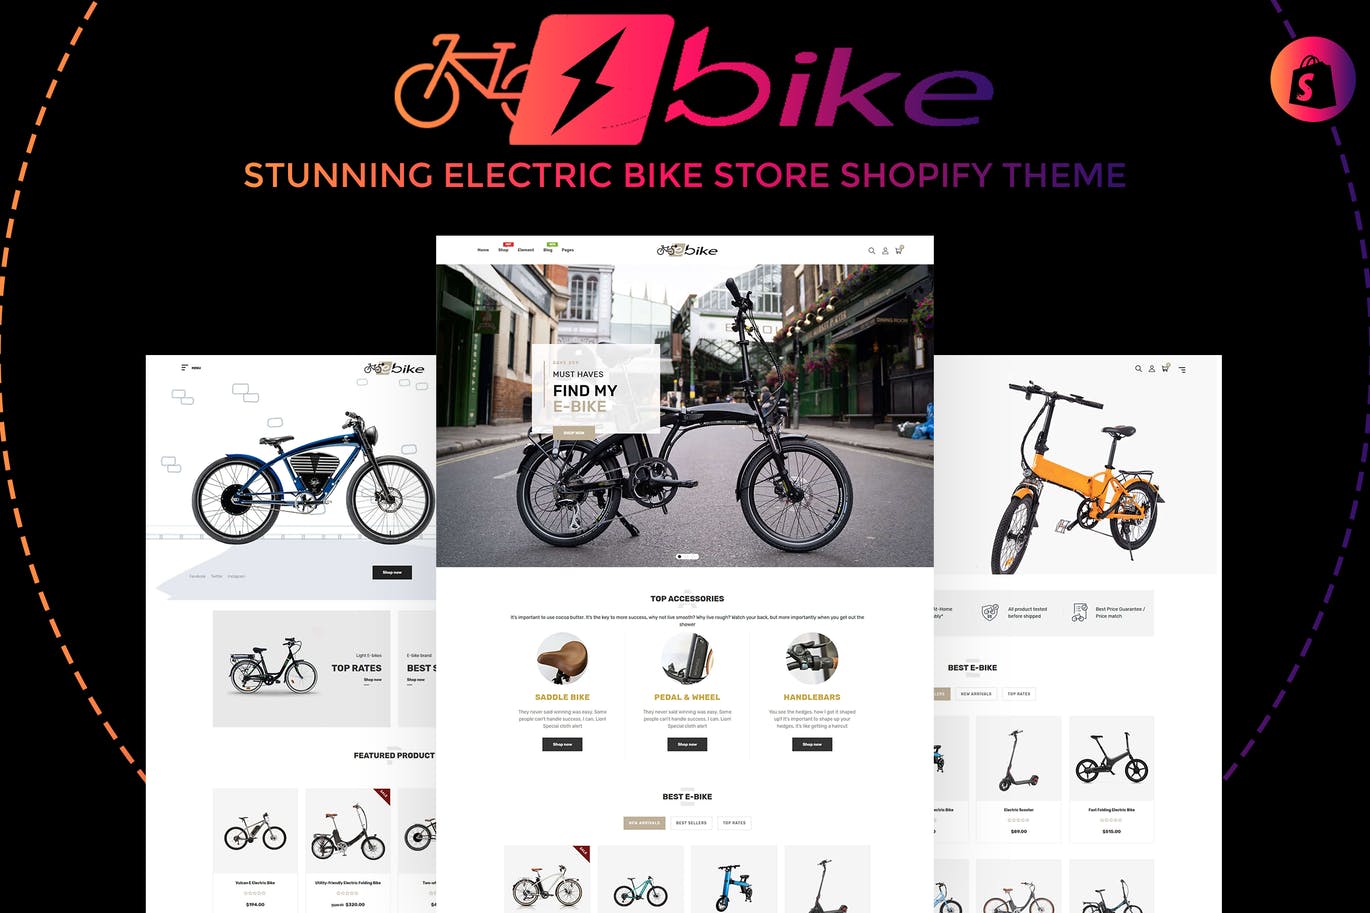 E-Bike | 令人惊叹的电动自行车商店Shopify主题